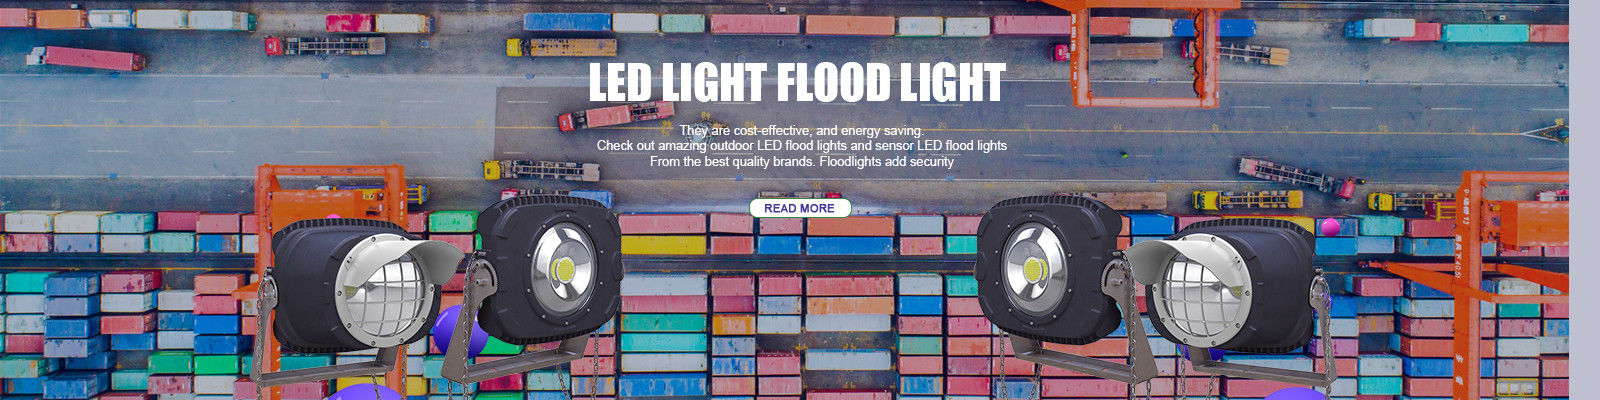 ضوء الفيضانات LED في الهواء الطلق